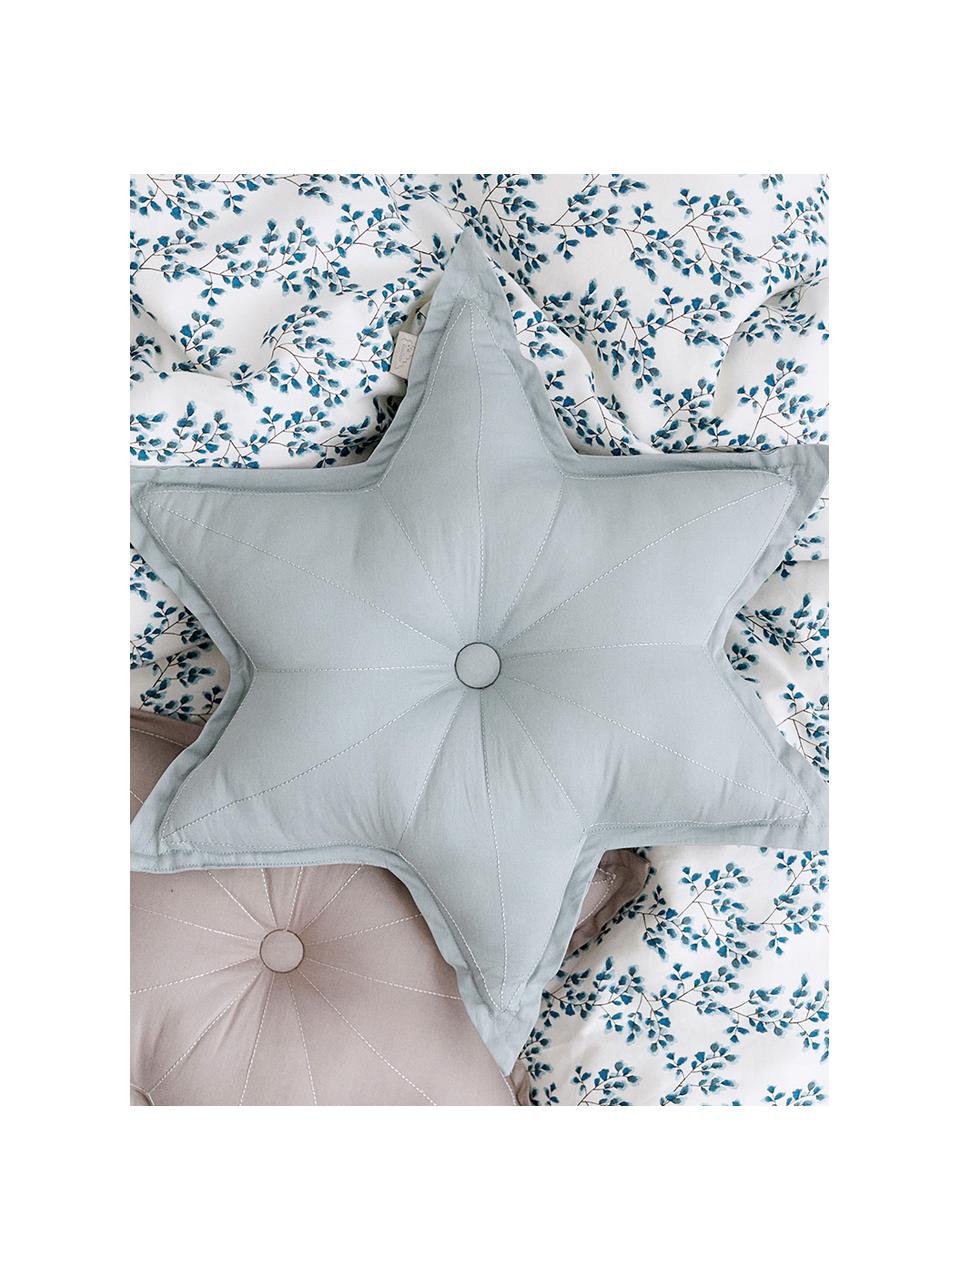 Poduszka z bawełny organicznej z wypełnieniem Star, Tapicerka: 100% bawełna organiczna z, Szary, S 45 x D 45 cm